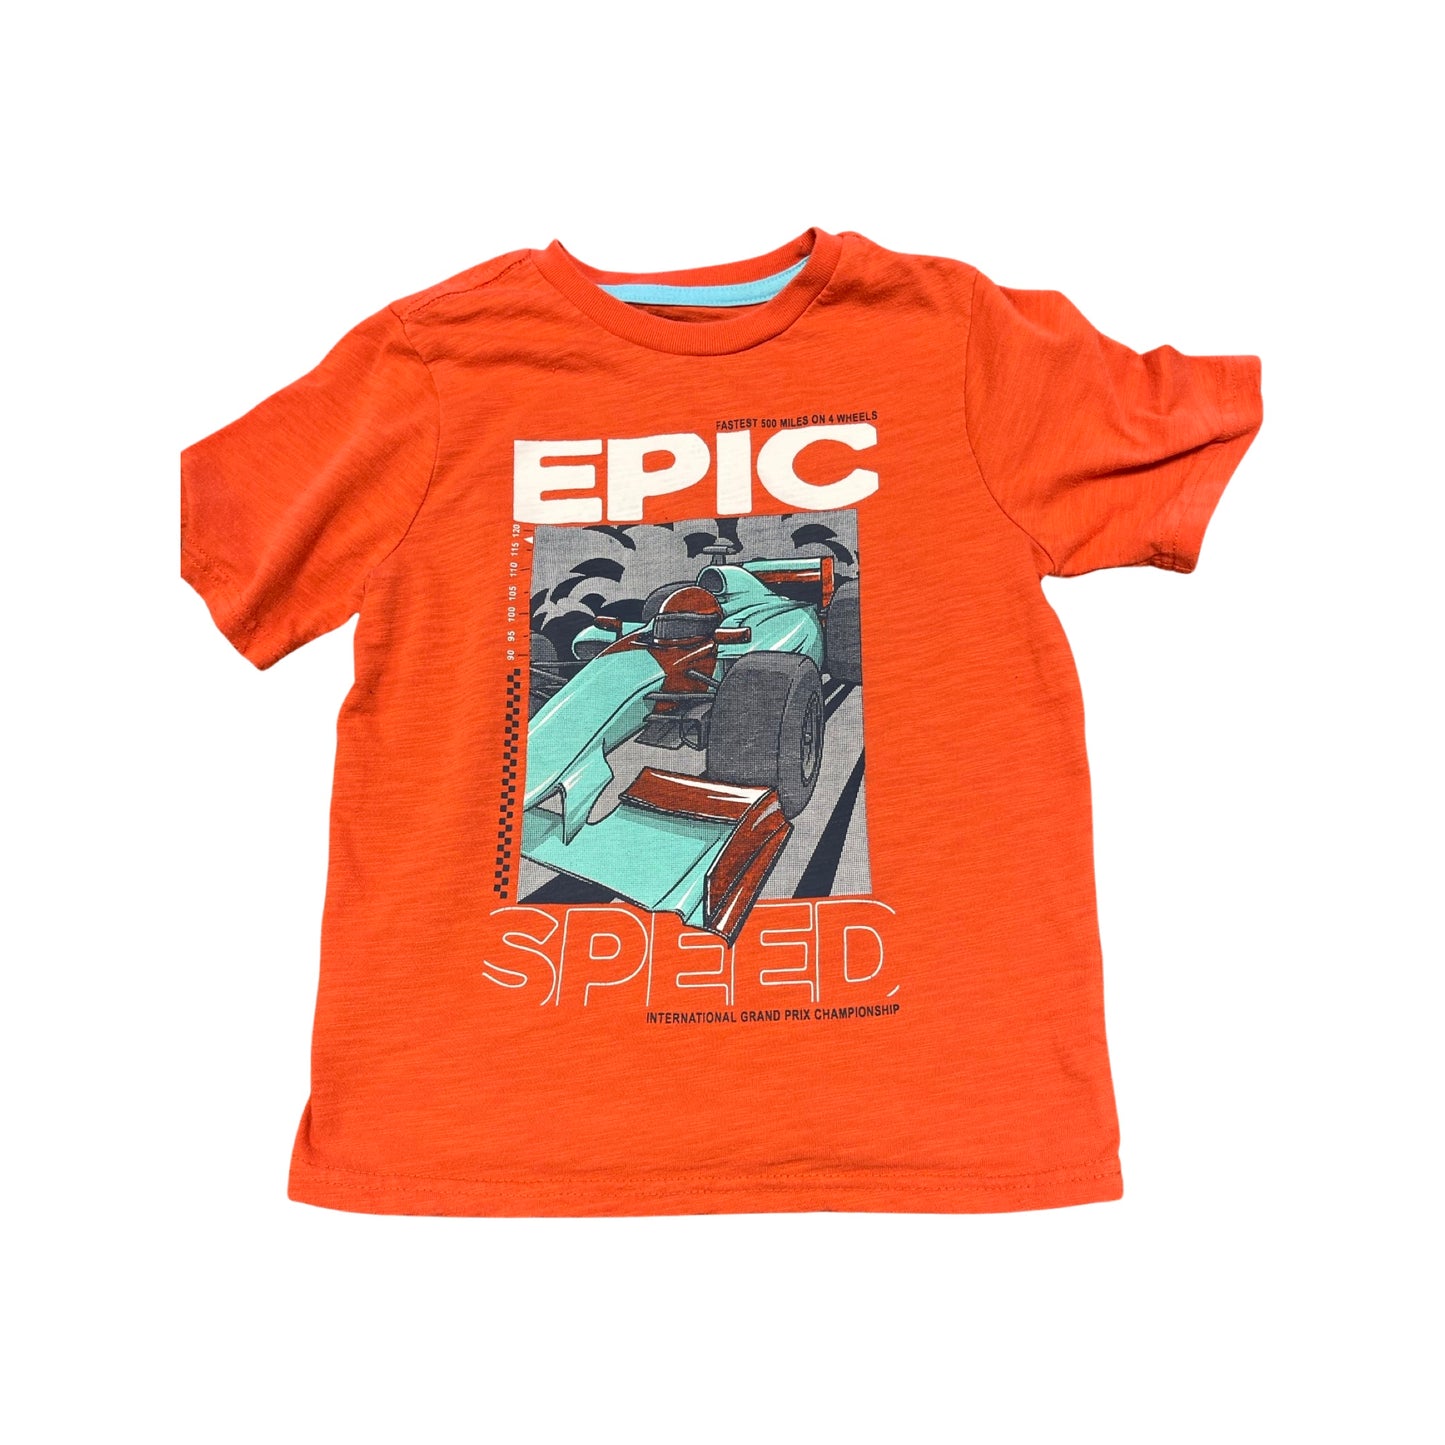 8 Epic Speed Shirt